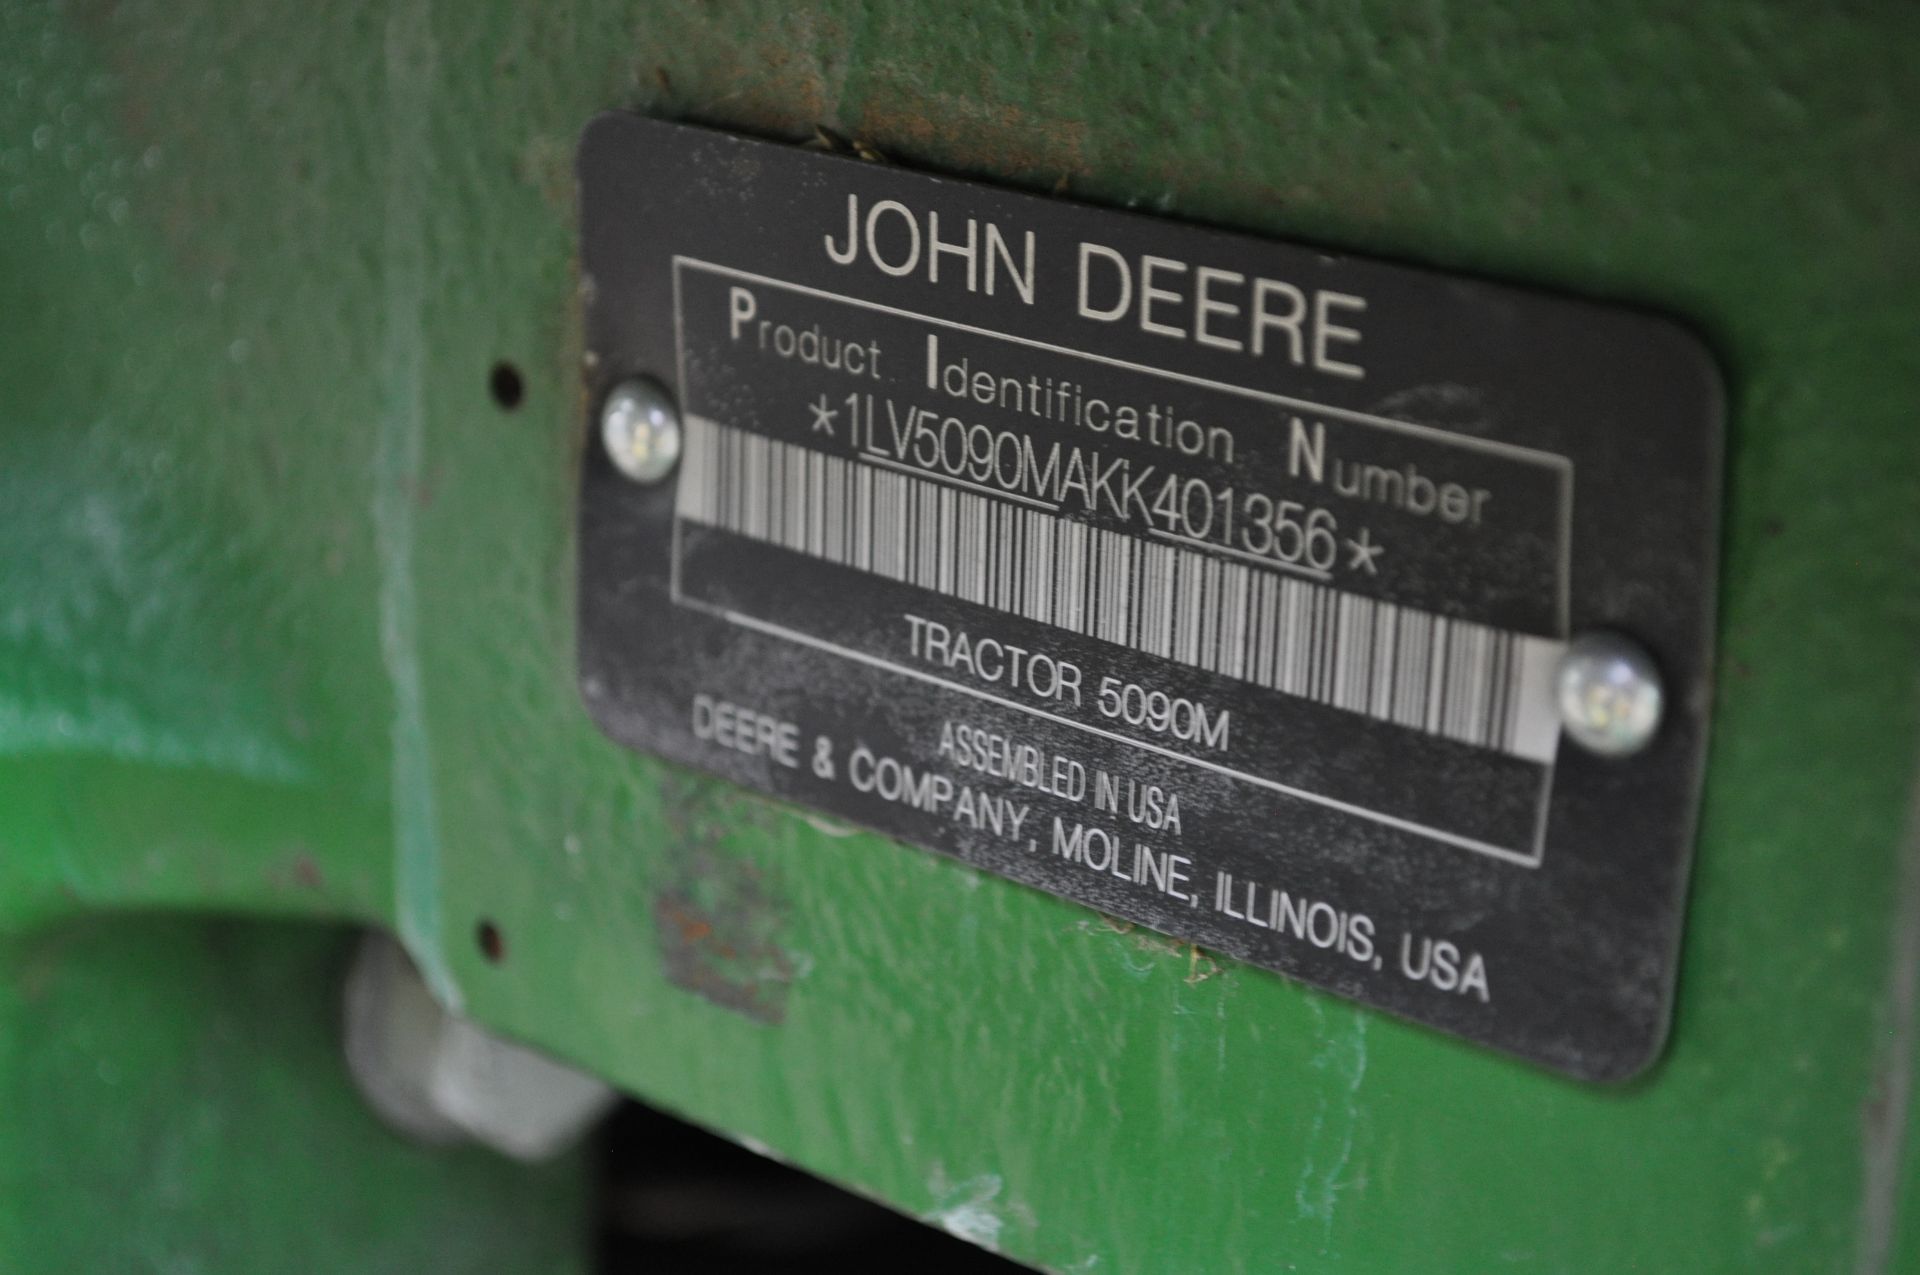 John Deere 5090M tractor - Image 28 of 41